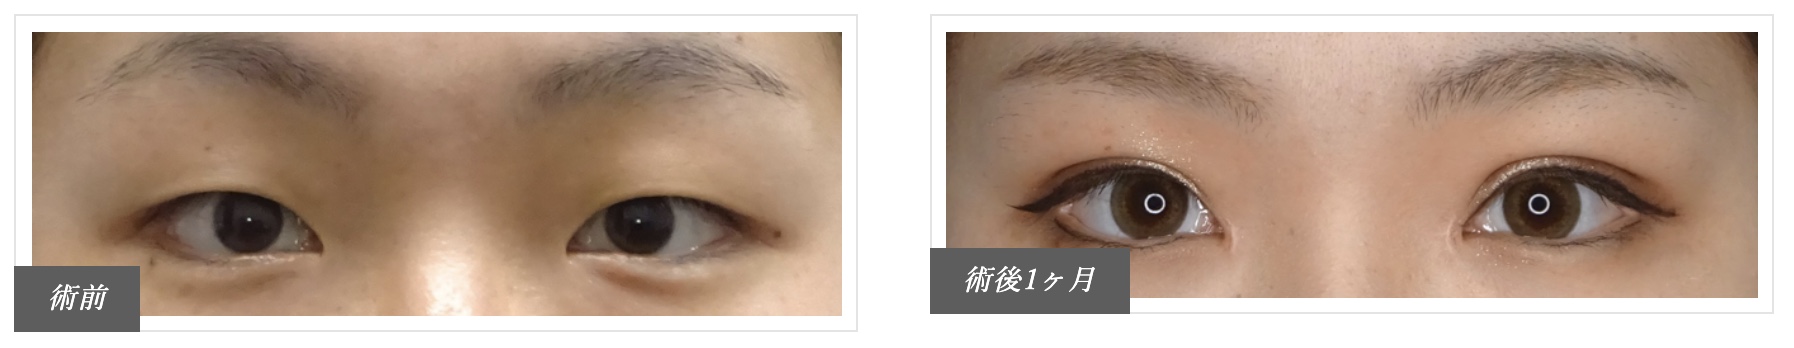 二重整形おすすめクリニック切開法画像引用東京中央美容外科